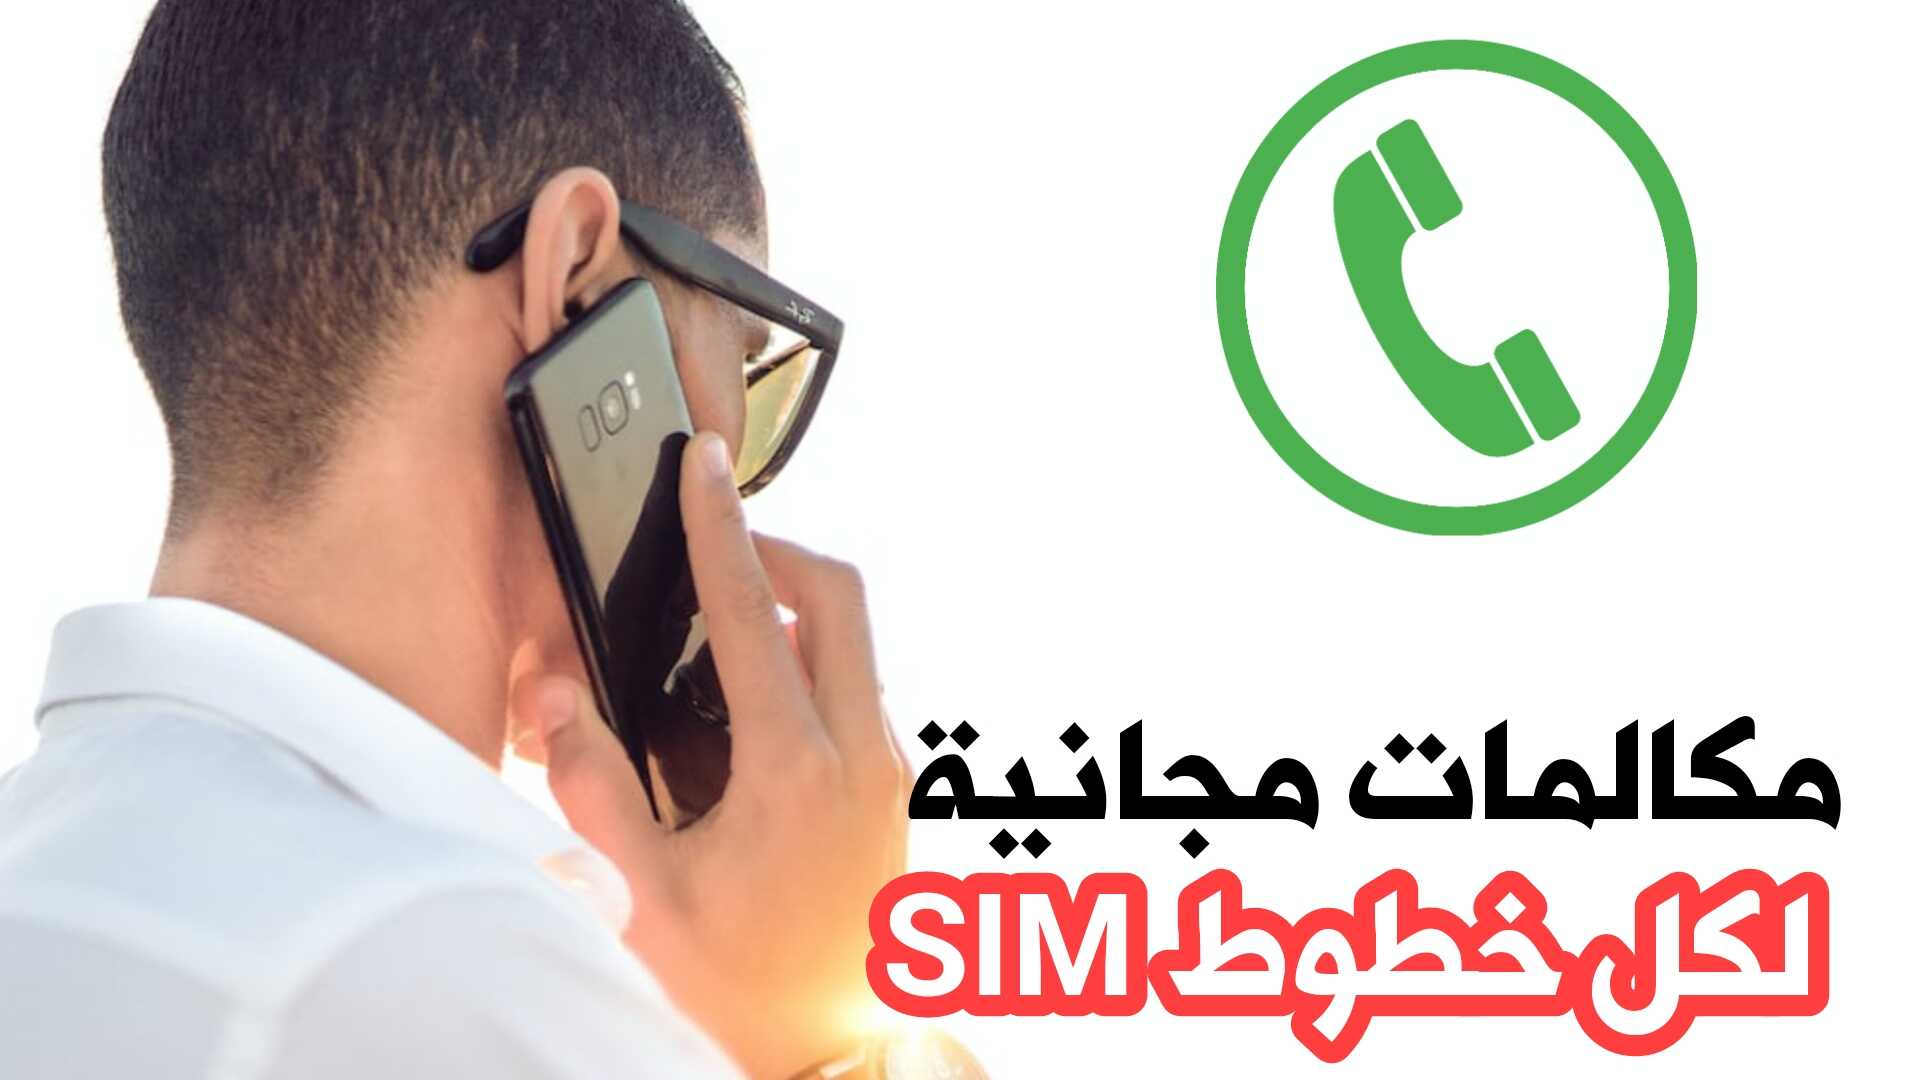 مكالمات مجانية لكل خطوط SIM ولجميع شركات الهاتف النقال